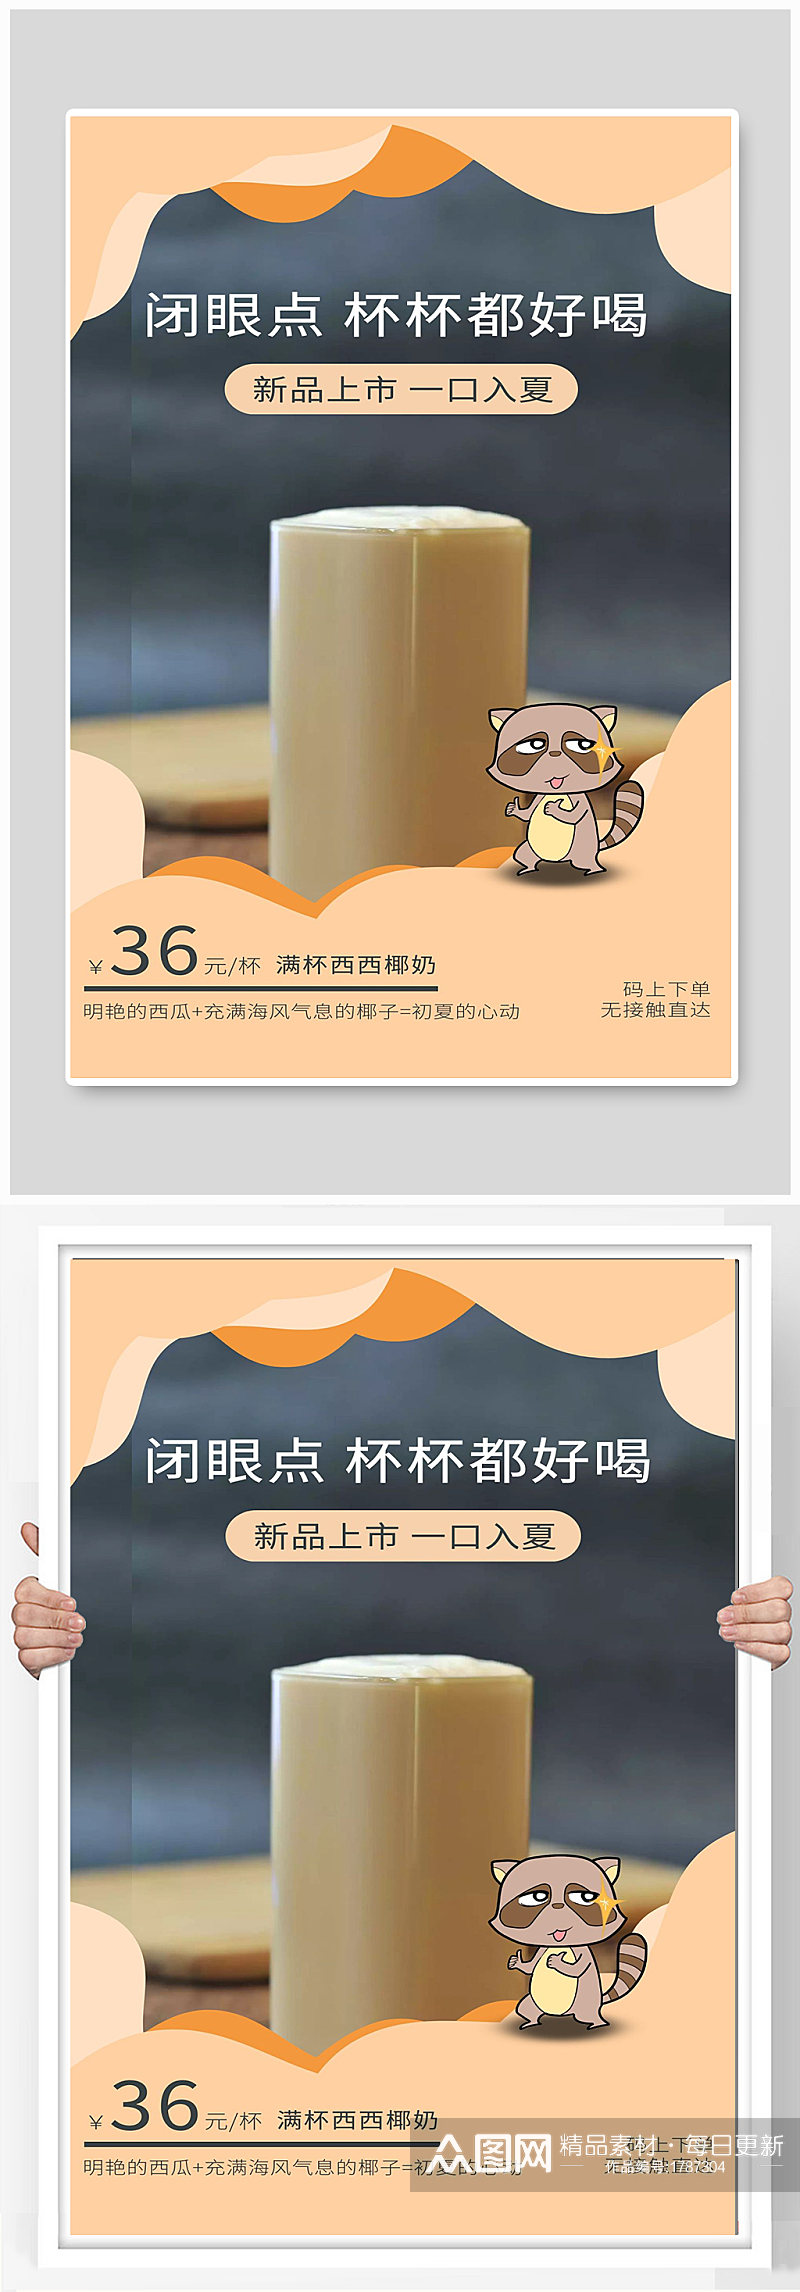 奶茶宣传海报设计制作素材